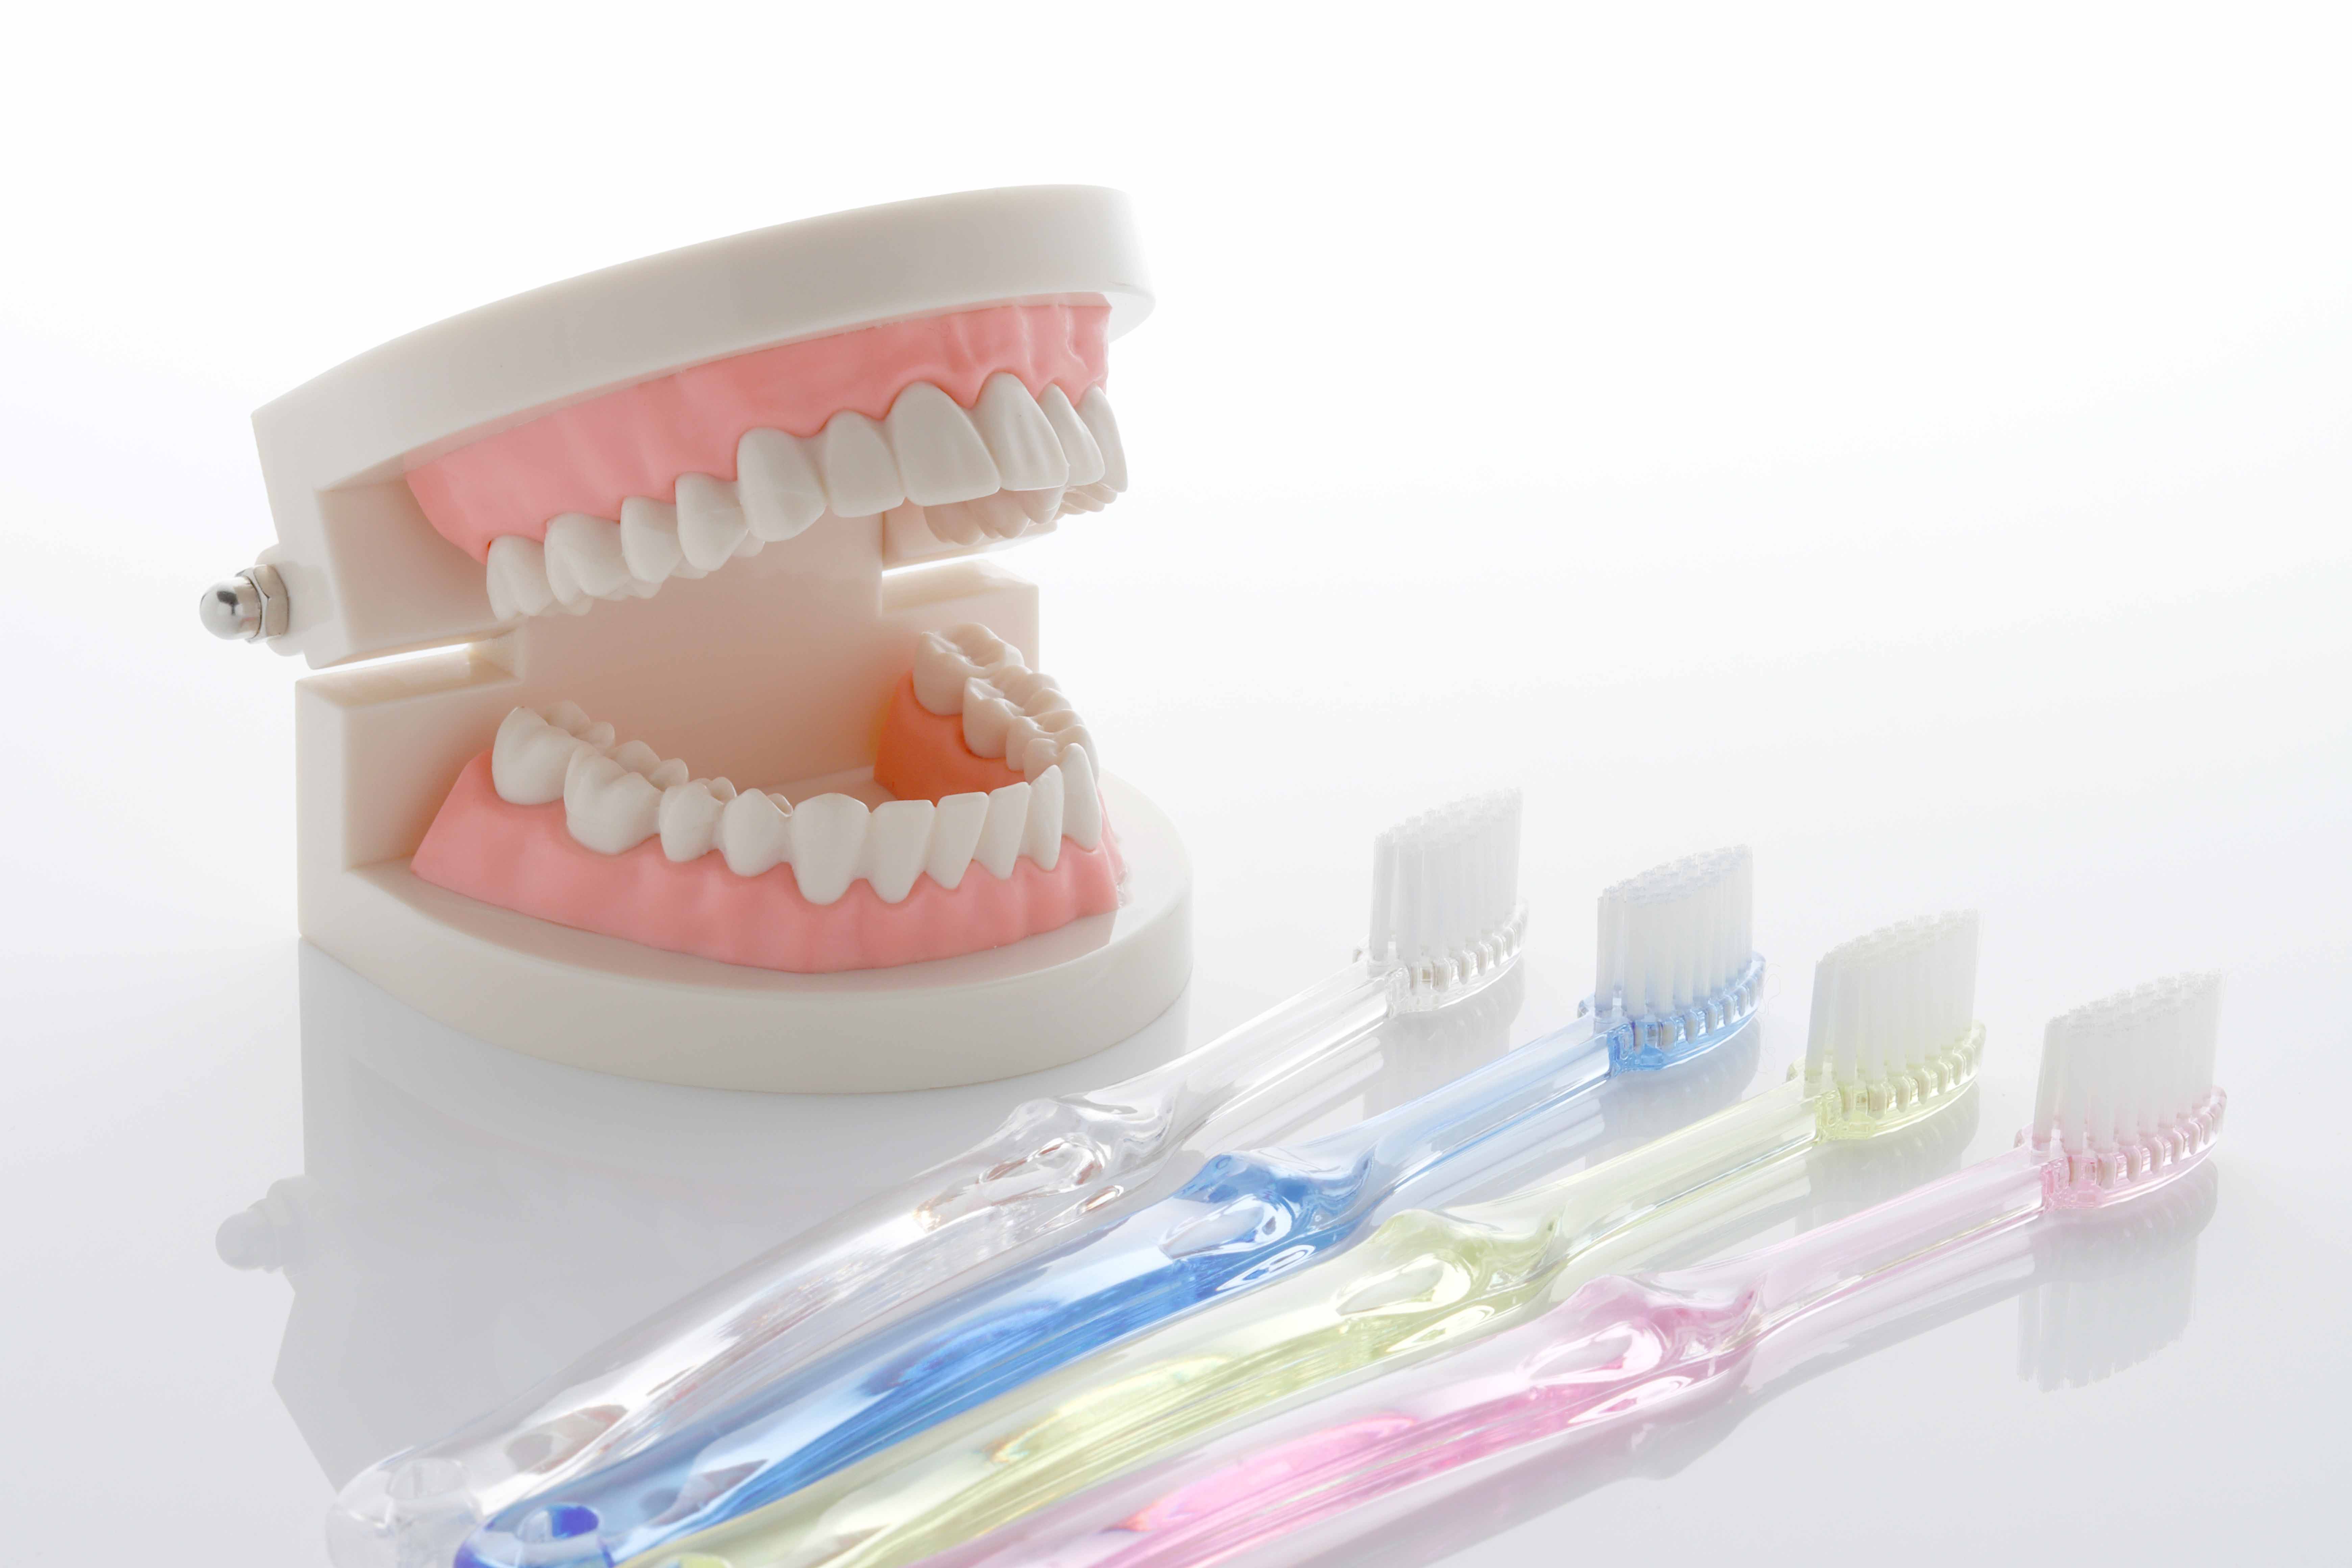 歯の模型と歯ブラシ4本が置かれている